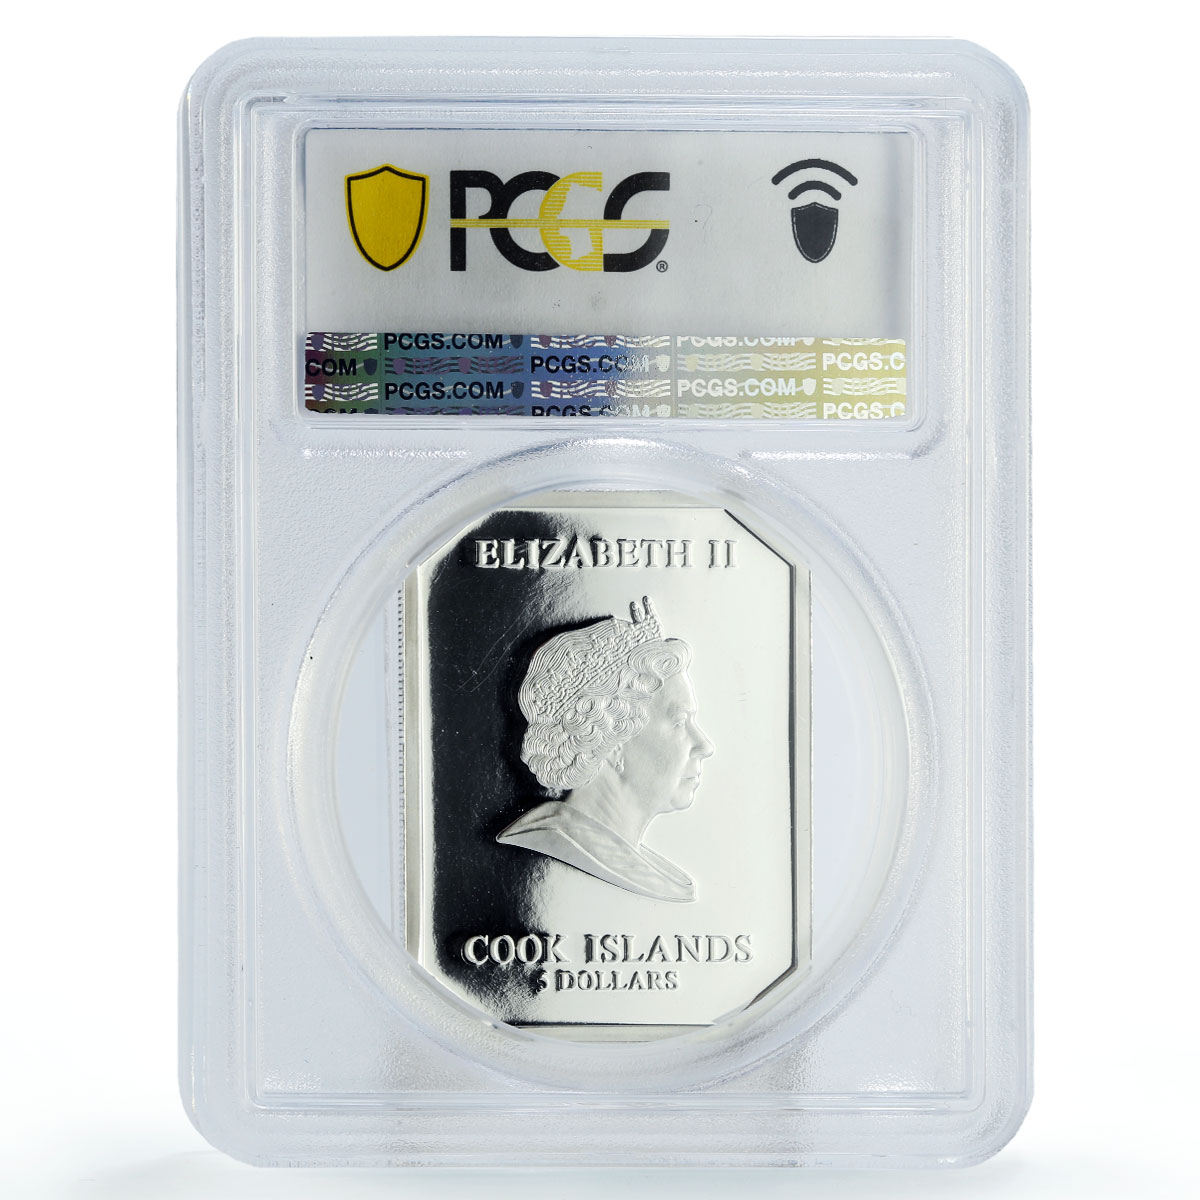 Cook Islands 5 dollars Vatican Art Pieta Gilt PR69 PCGS silver coin 2009